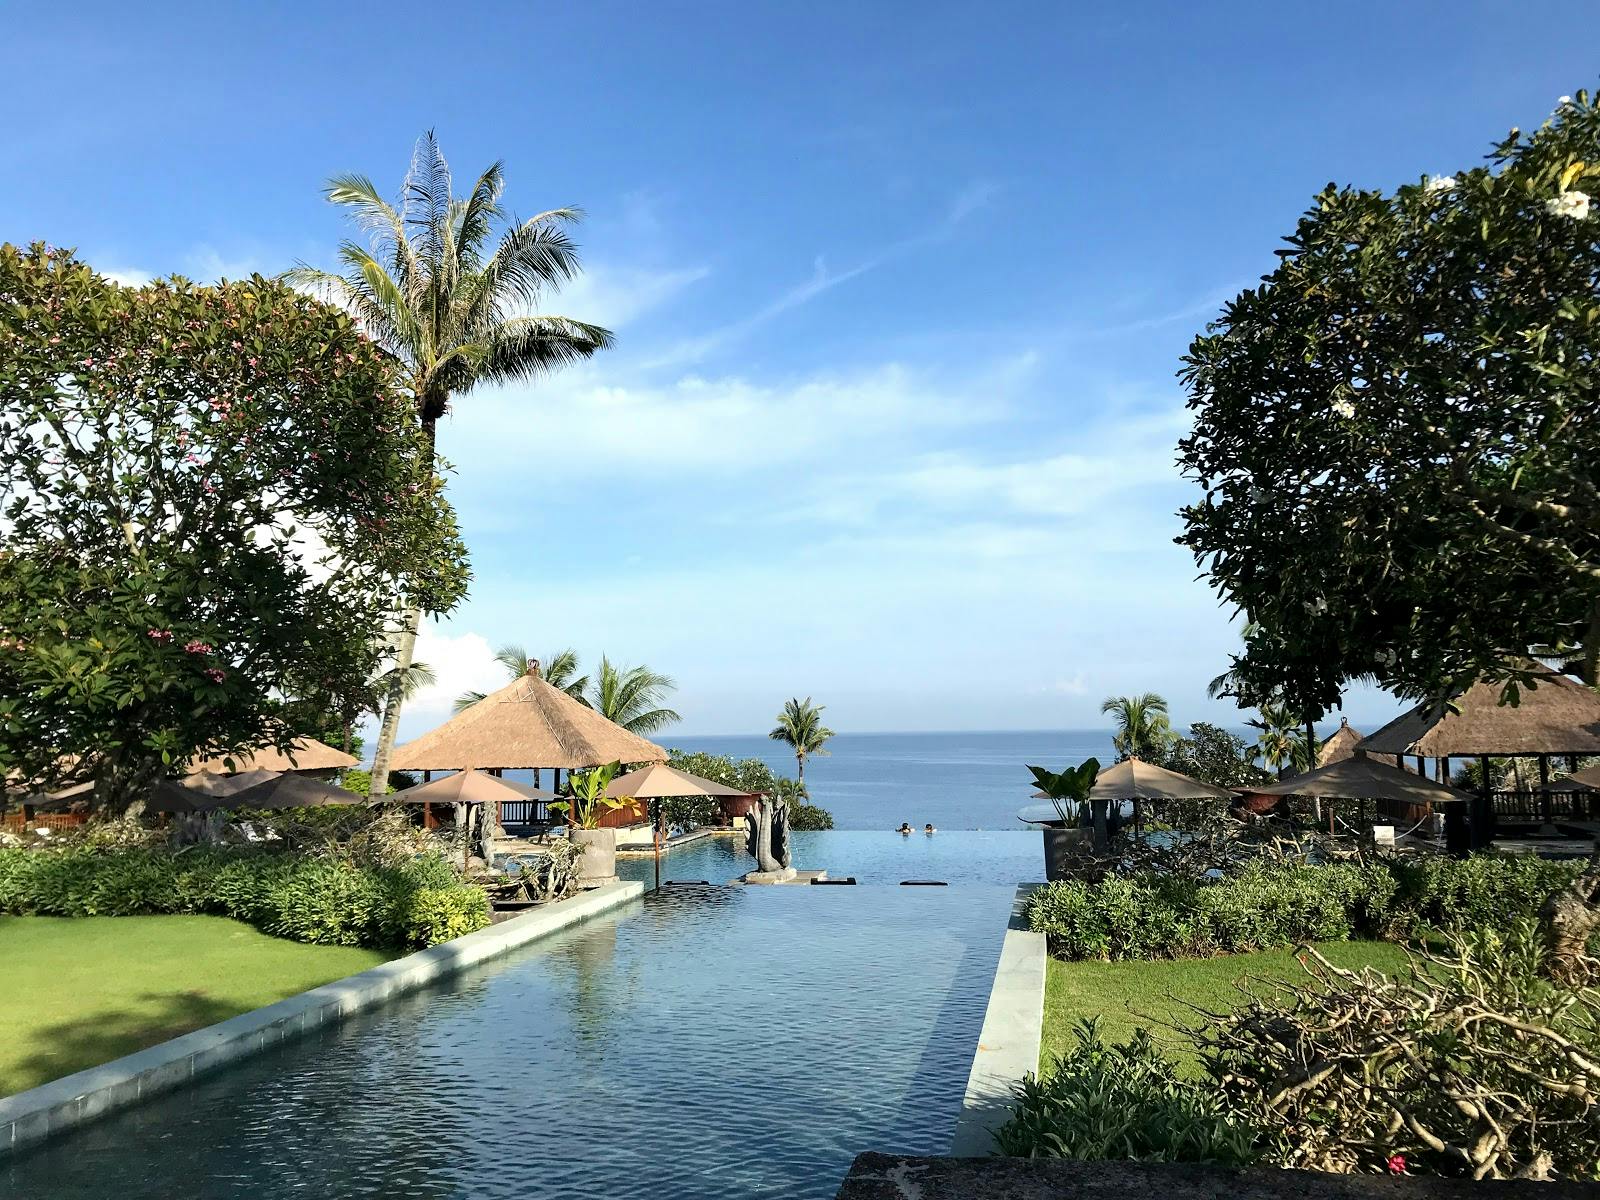 Image - Bali Swing Terrace